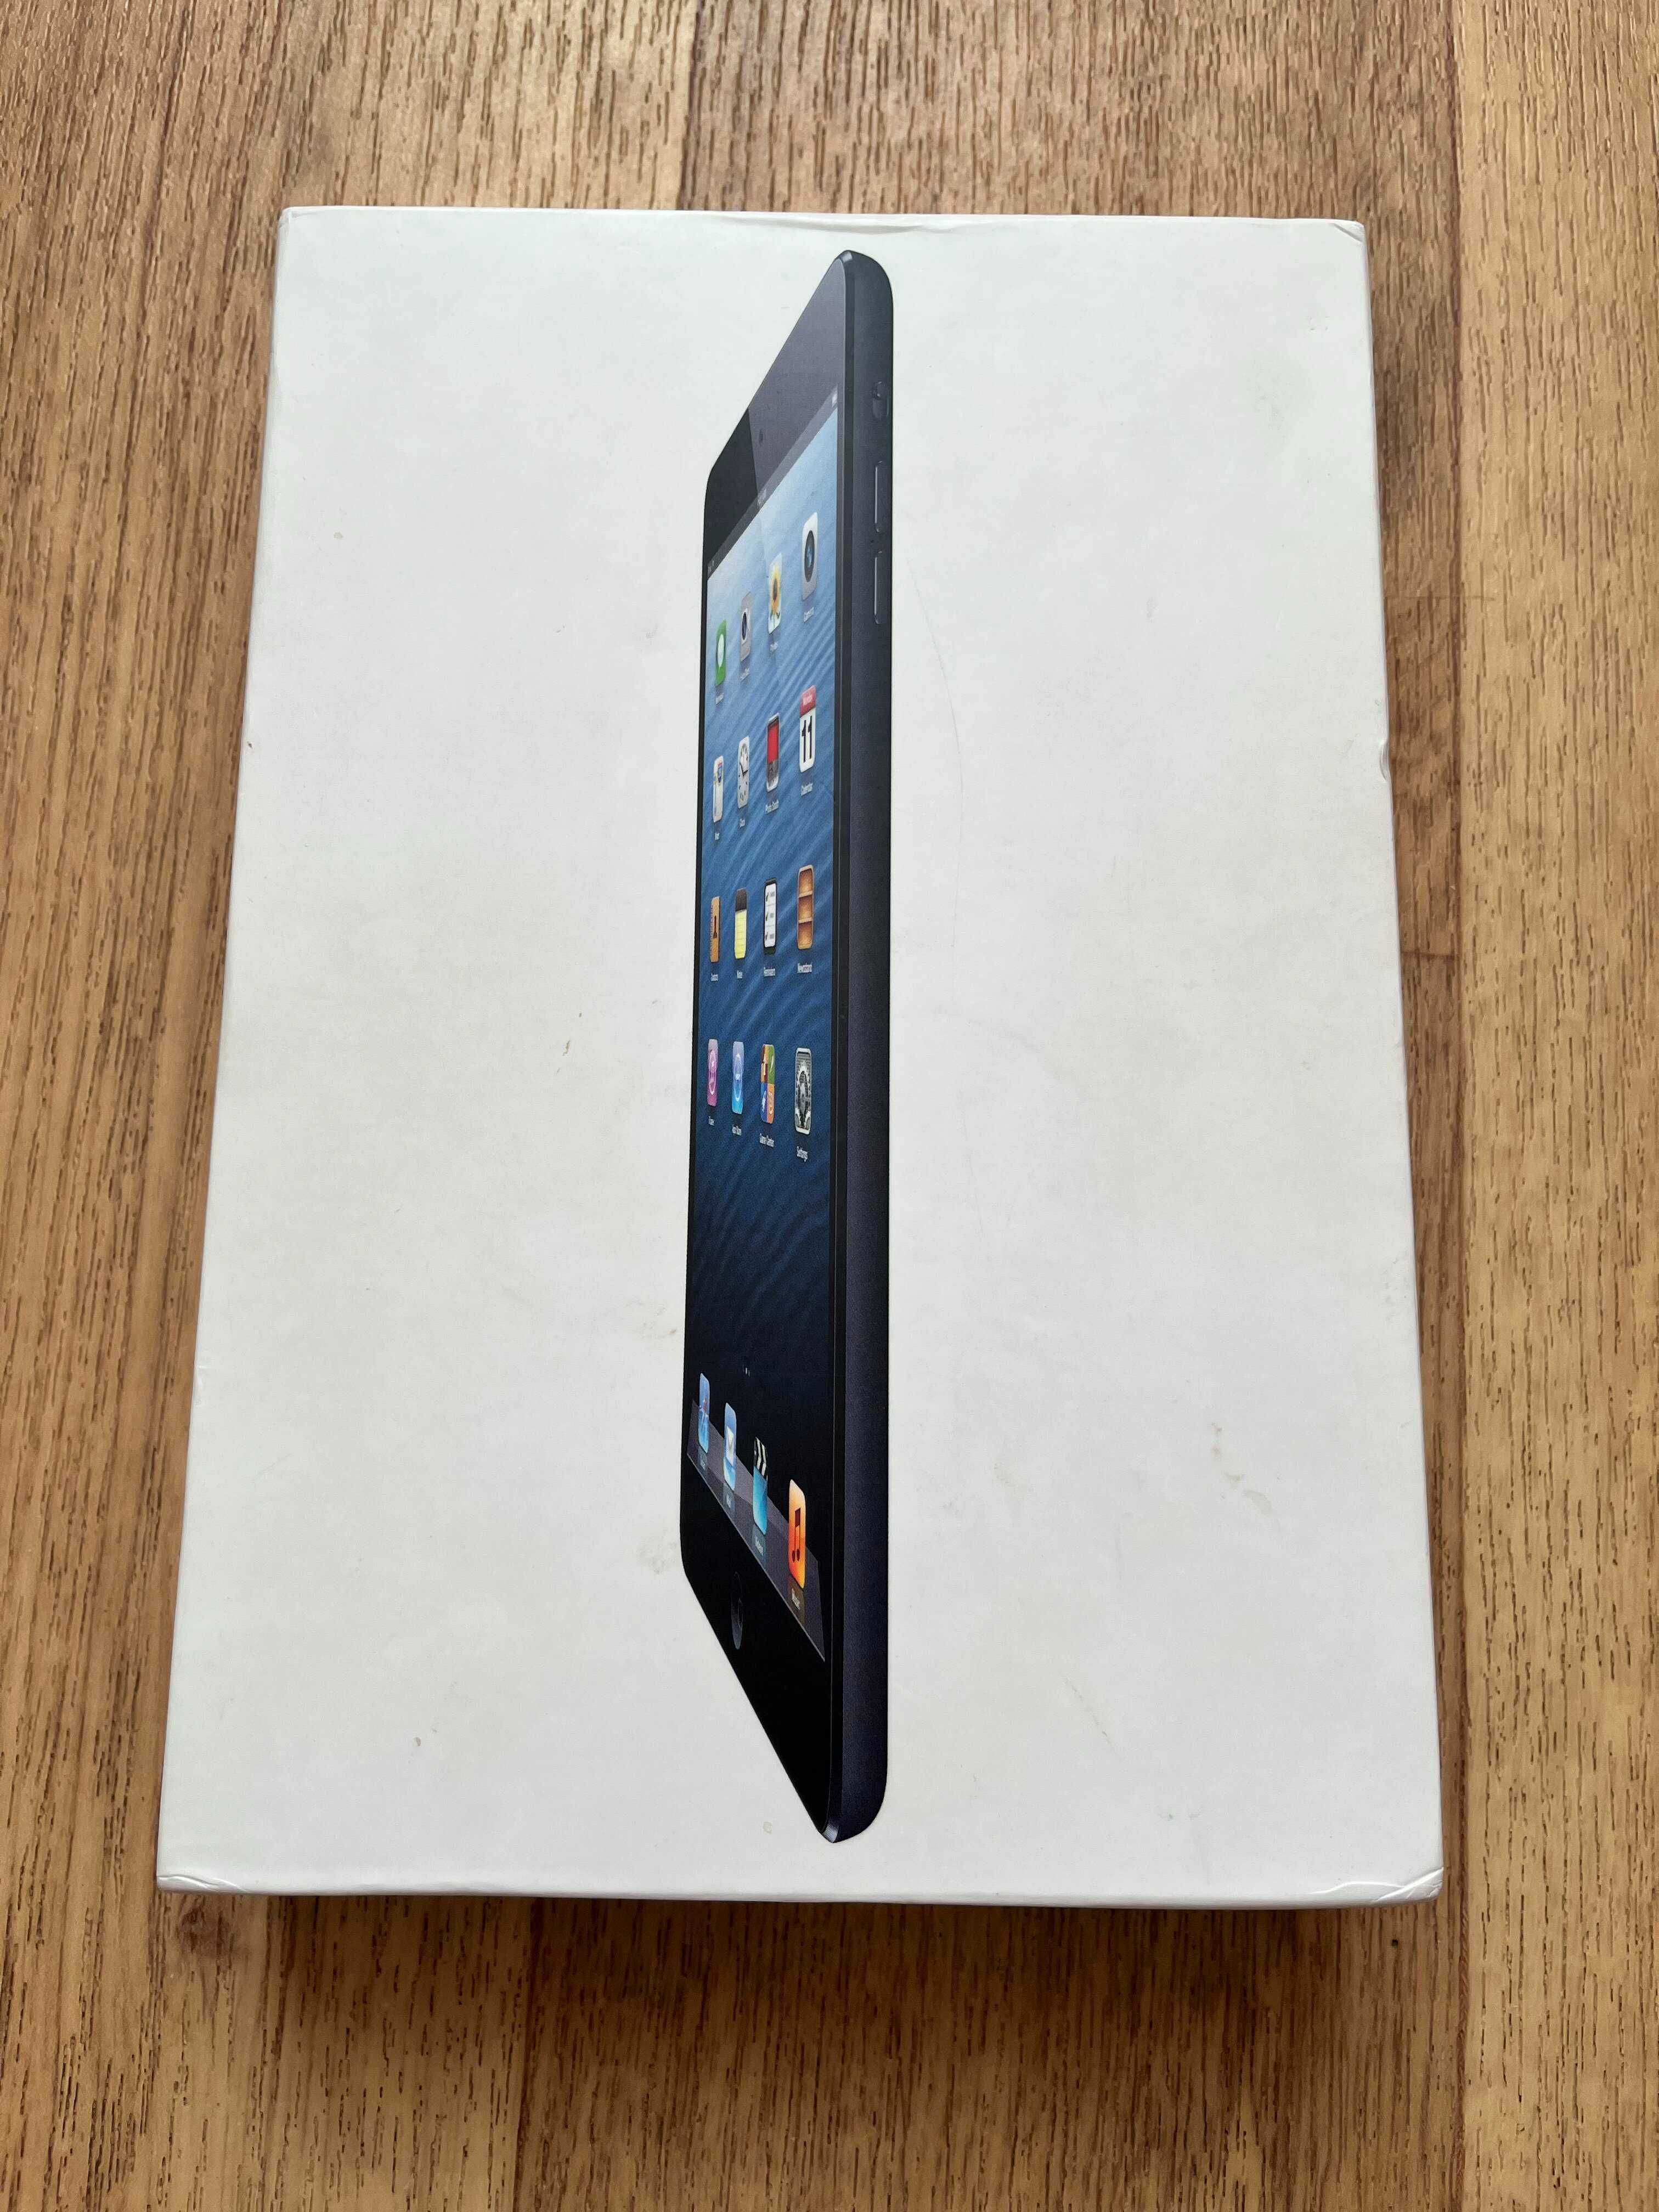 Упаковка iPad mini A 1432 (30 грн)